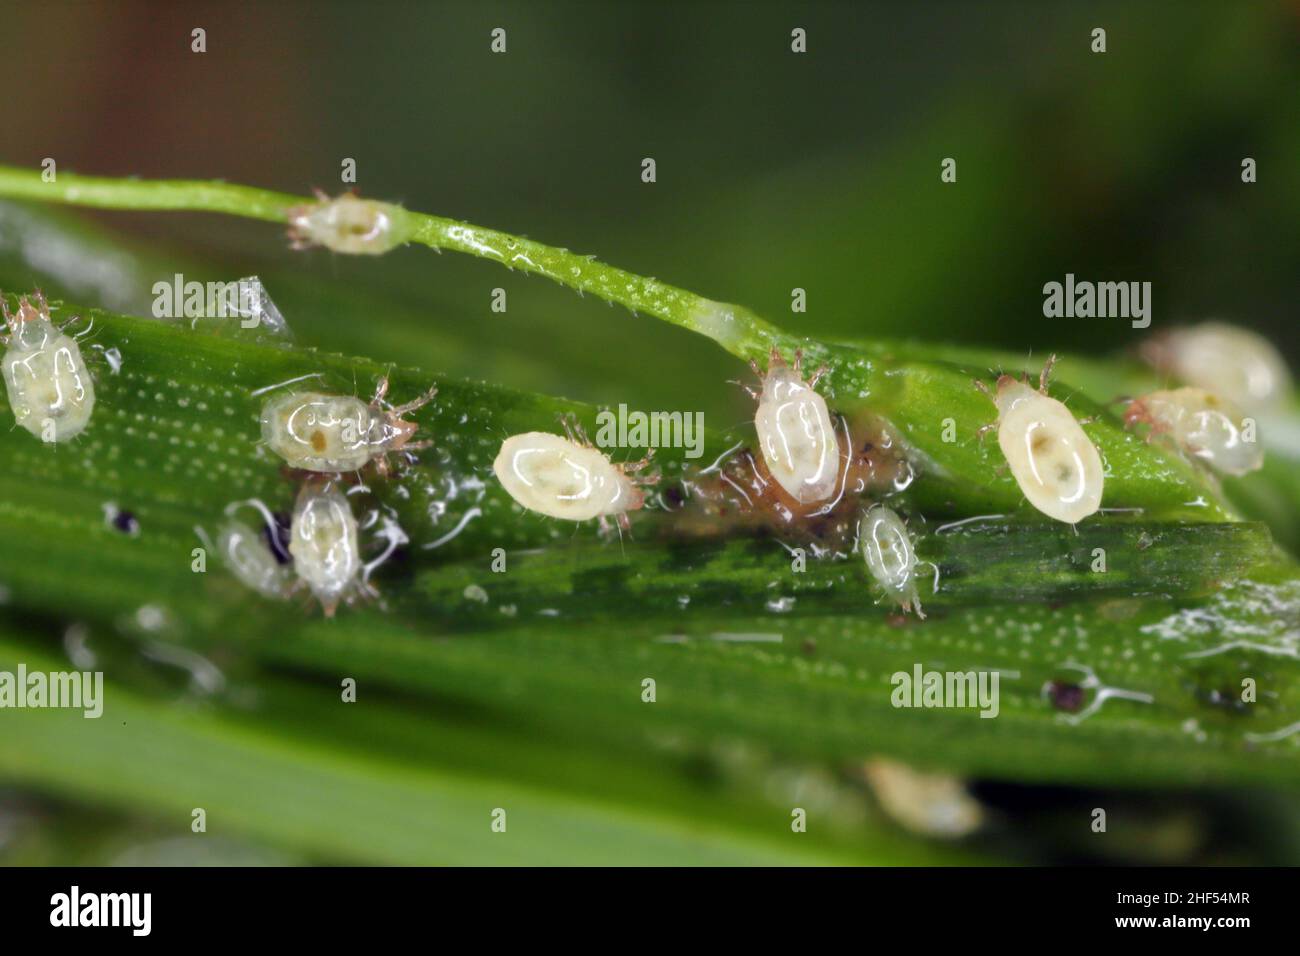 Grossissement de minuscules acariens de la famille des acaridae. Banque D'Images